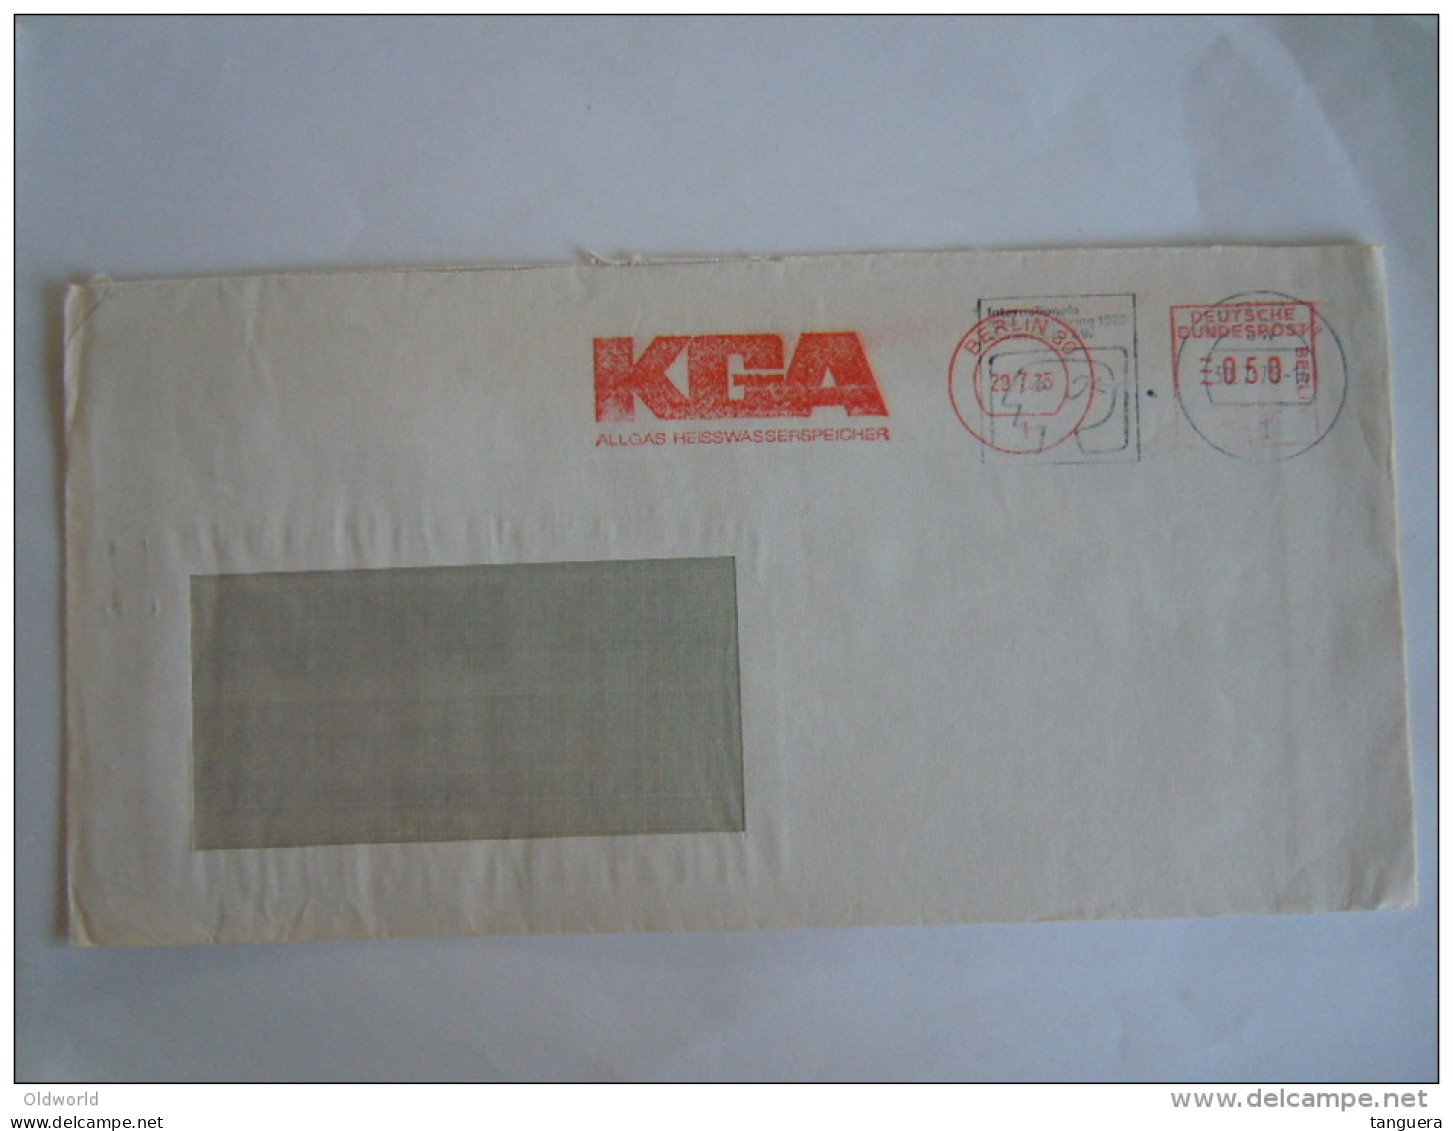 Germany Allemagne Brief Lettre Letter EMA 1975 KGA Allgas Heisswasserspeicher Rare 2 Cachets Superposés Berlin - Franking Machines (EMA)